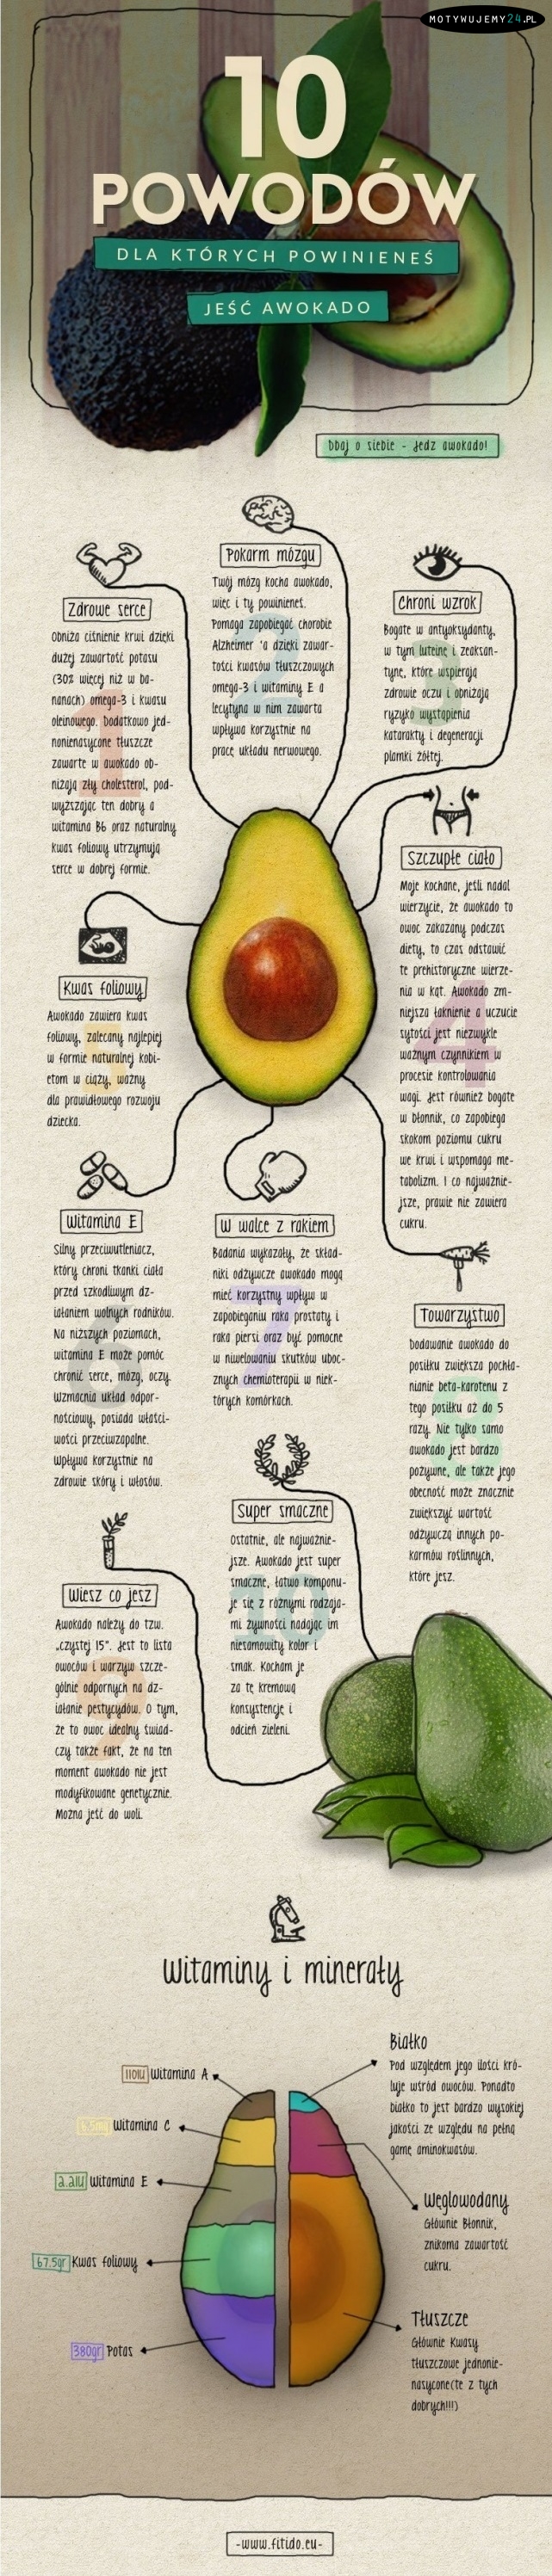 10 powodów, dla których warto jeść avocado